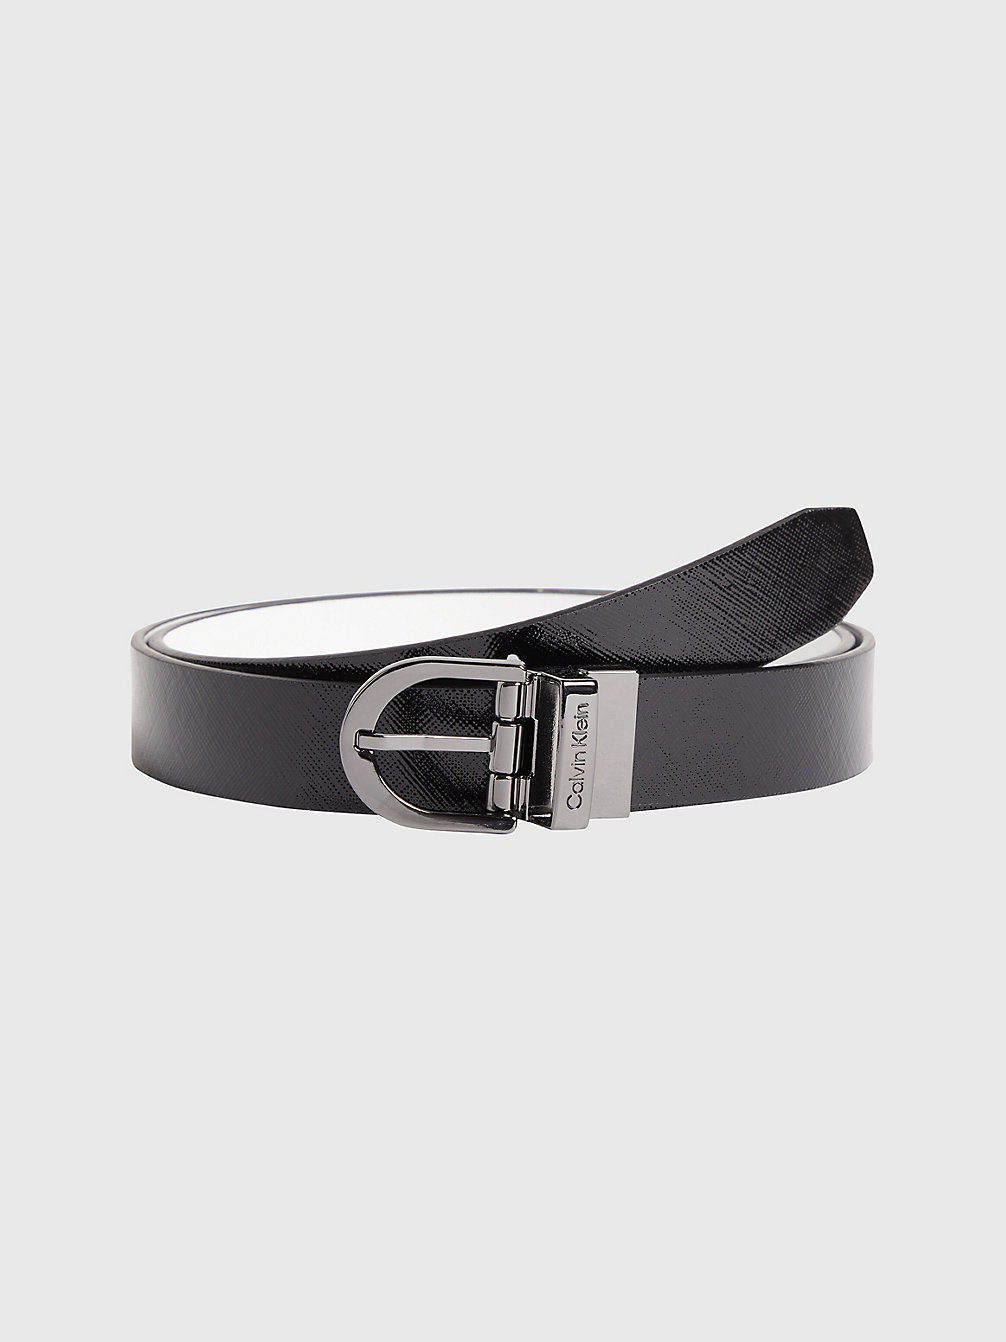 Cintura Double-Face In Confezione Regalo > BLACK/WHITE > undefined donna > Calvin Klein